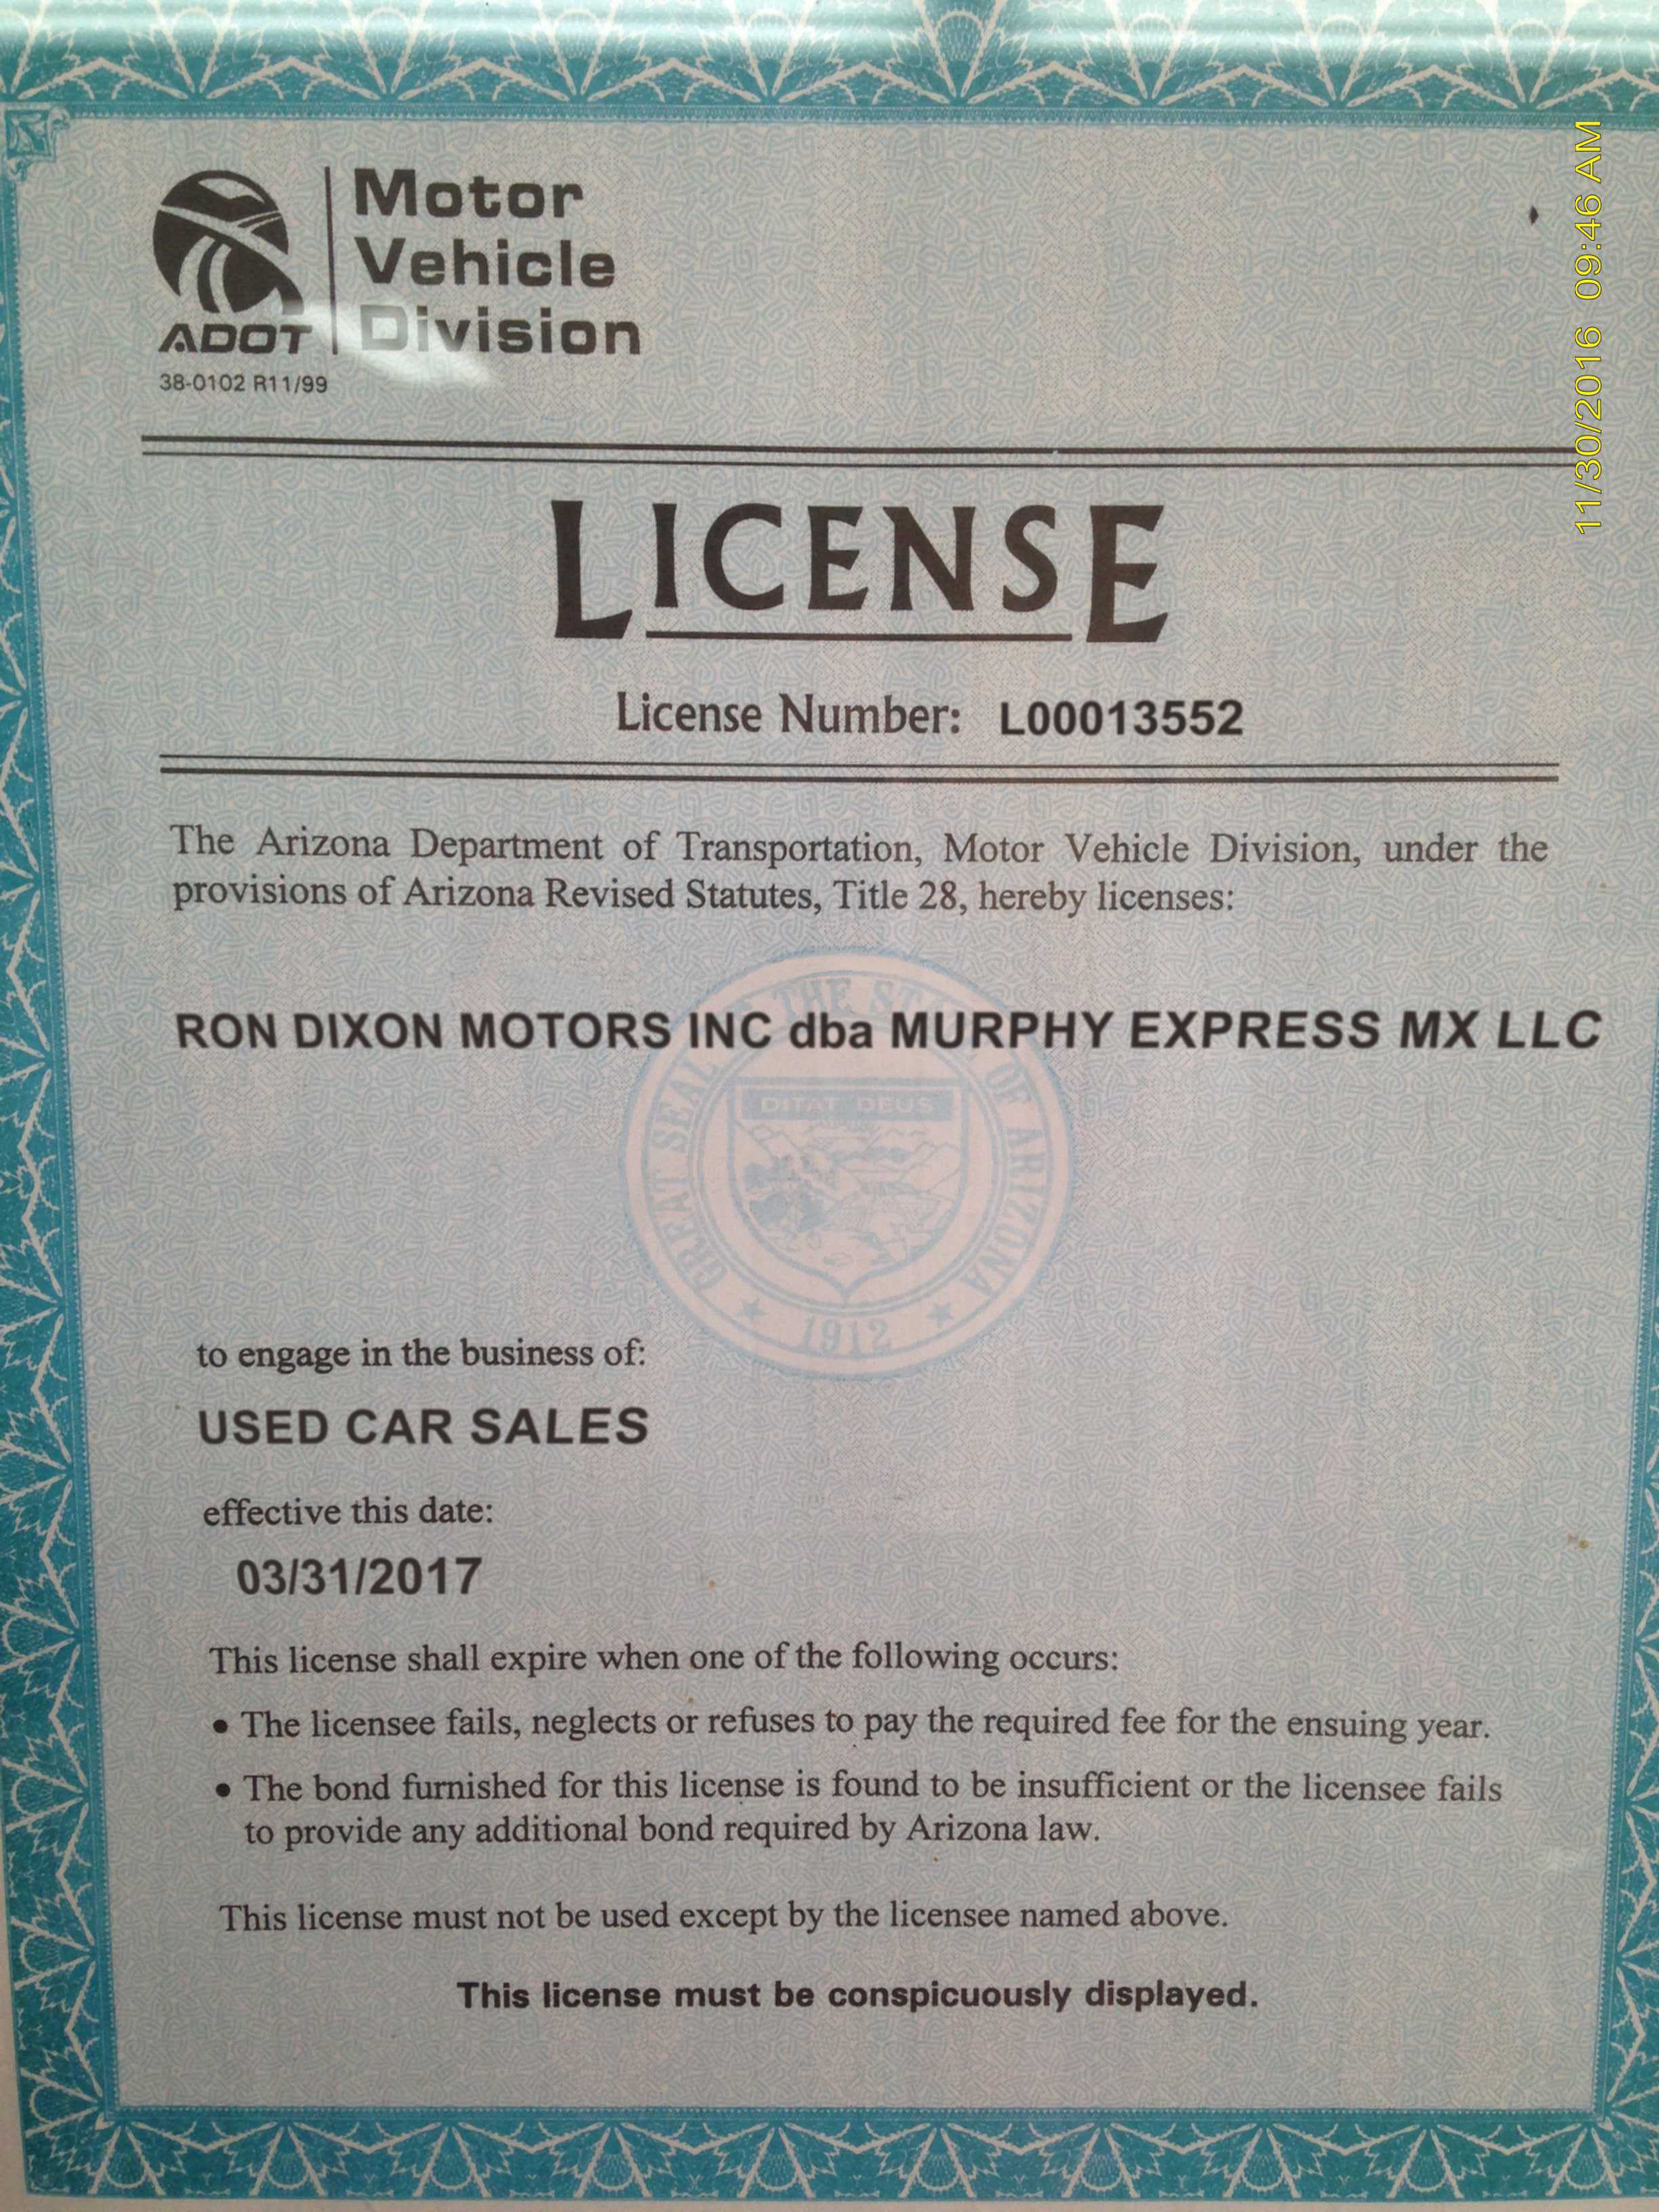 Ron Dixon Motors falsified AZ dealer license.